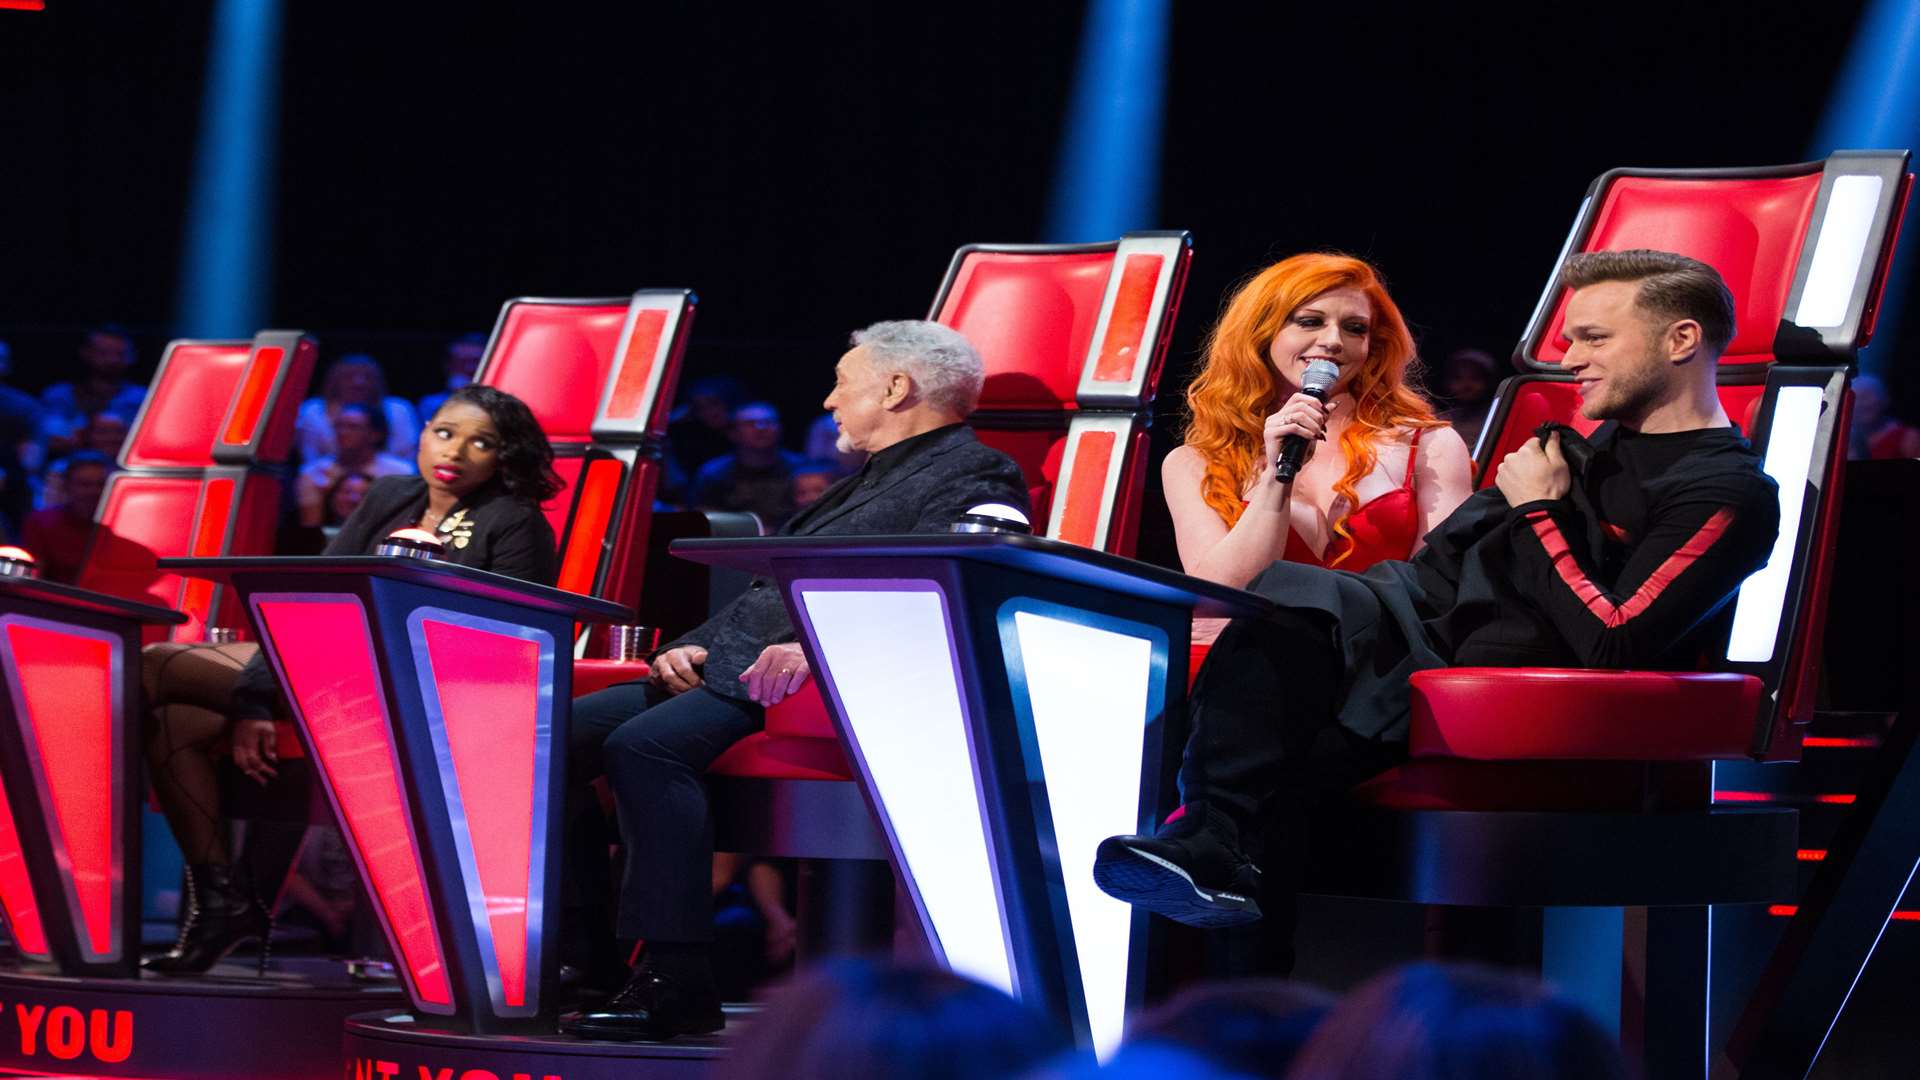 Ivy meets the judges. Picture: ITV Plc